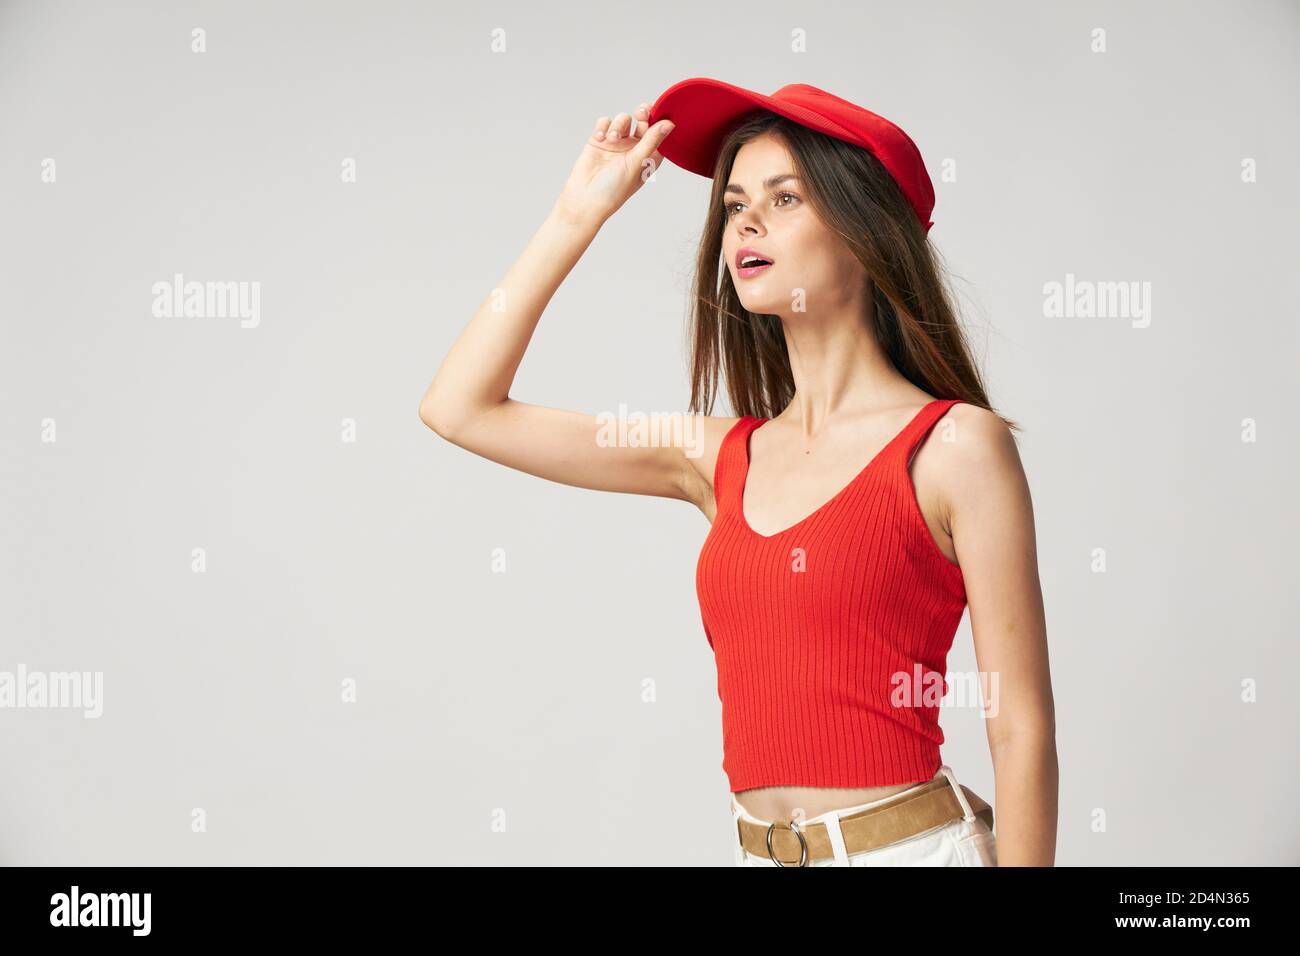 Femme regardant dans la distance casquette rouge sur la tête t-shirt  émotions en bouche ouverte Photo Stock - Alamy